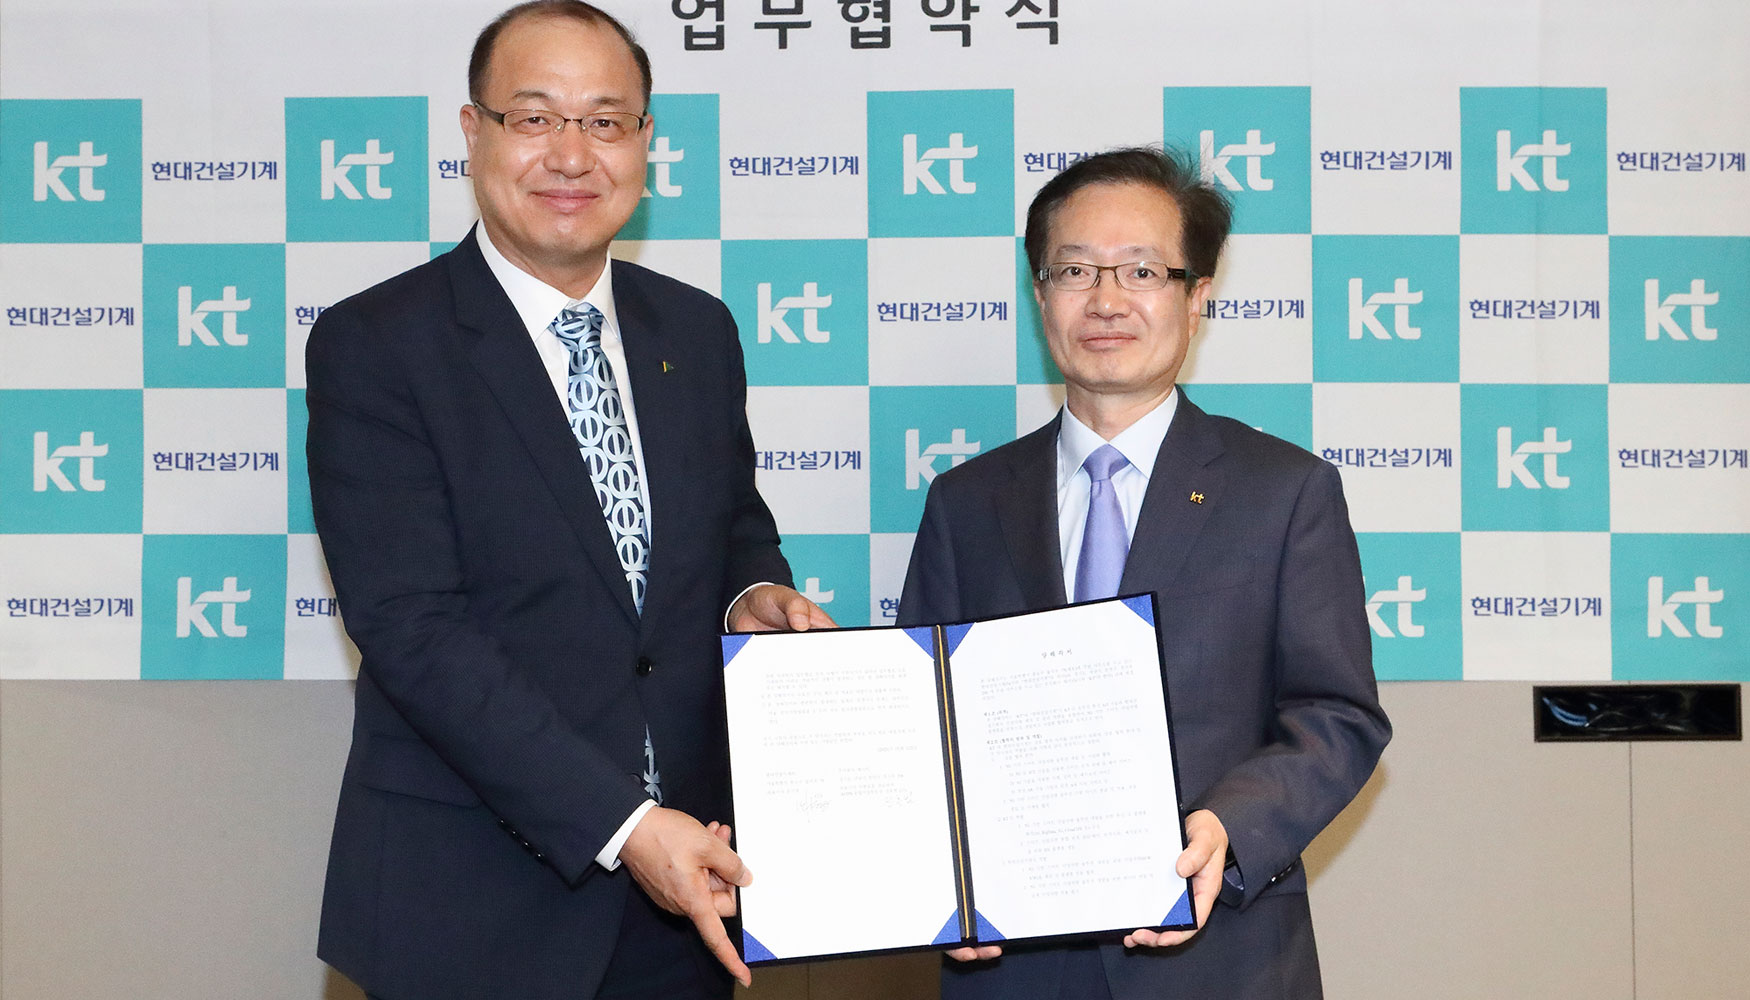 De izquierda a derecha: Kong Ki-young, presidente de Hyundai CE, y Jeon Hong-beom, vicepresidente de KT